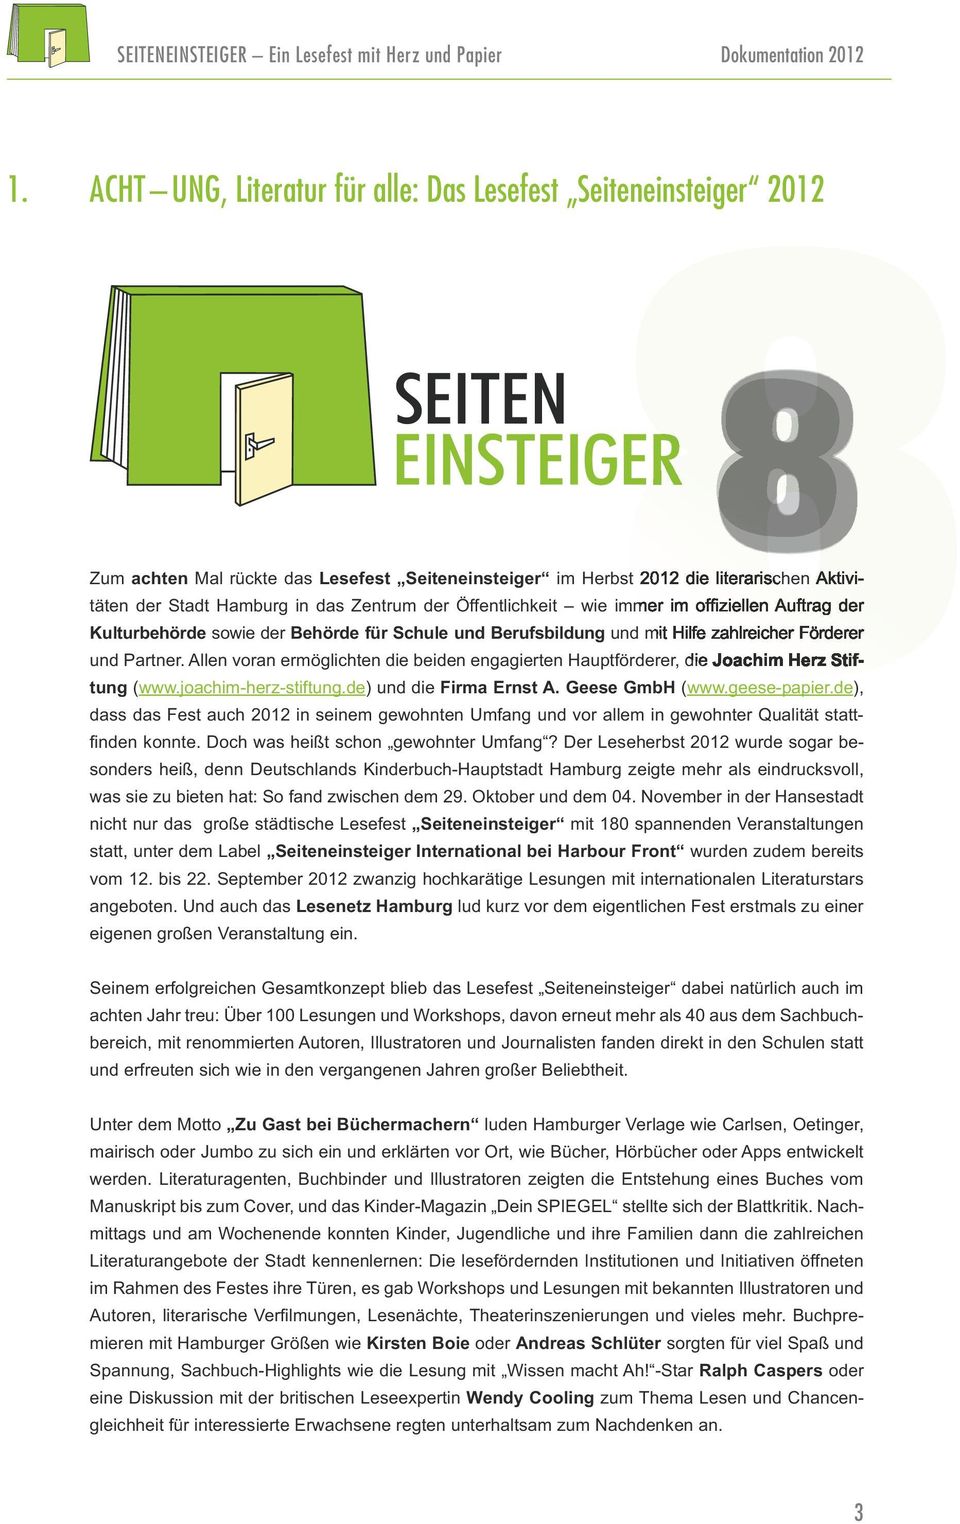 de) und die Firma Ernst A. Geese GmbH (www.geese-papier.